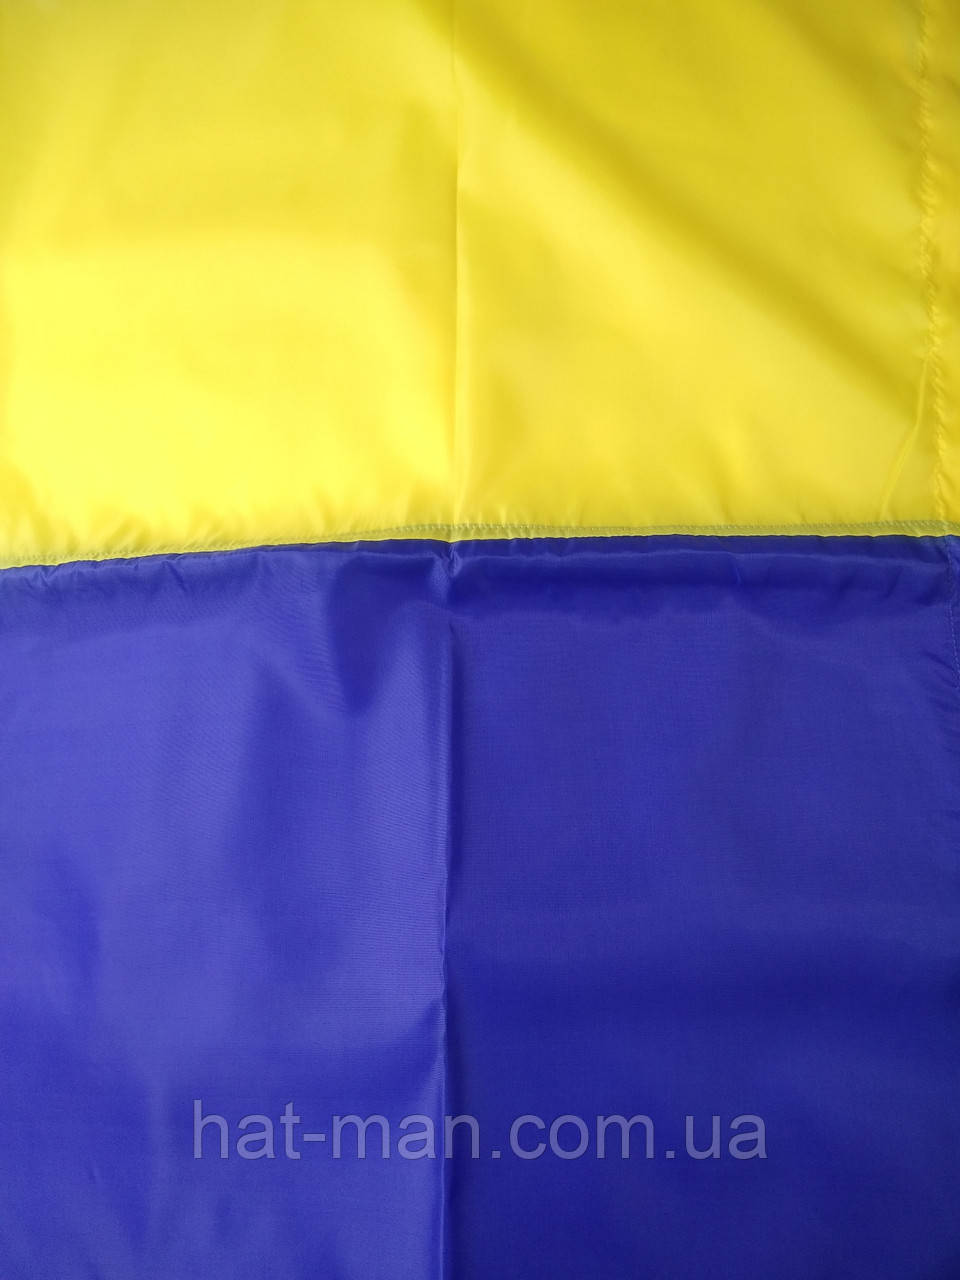 Прапор України великий: 140 на 95см, з креп-сатину